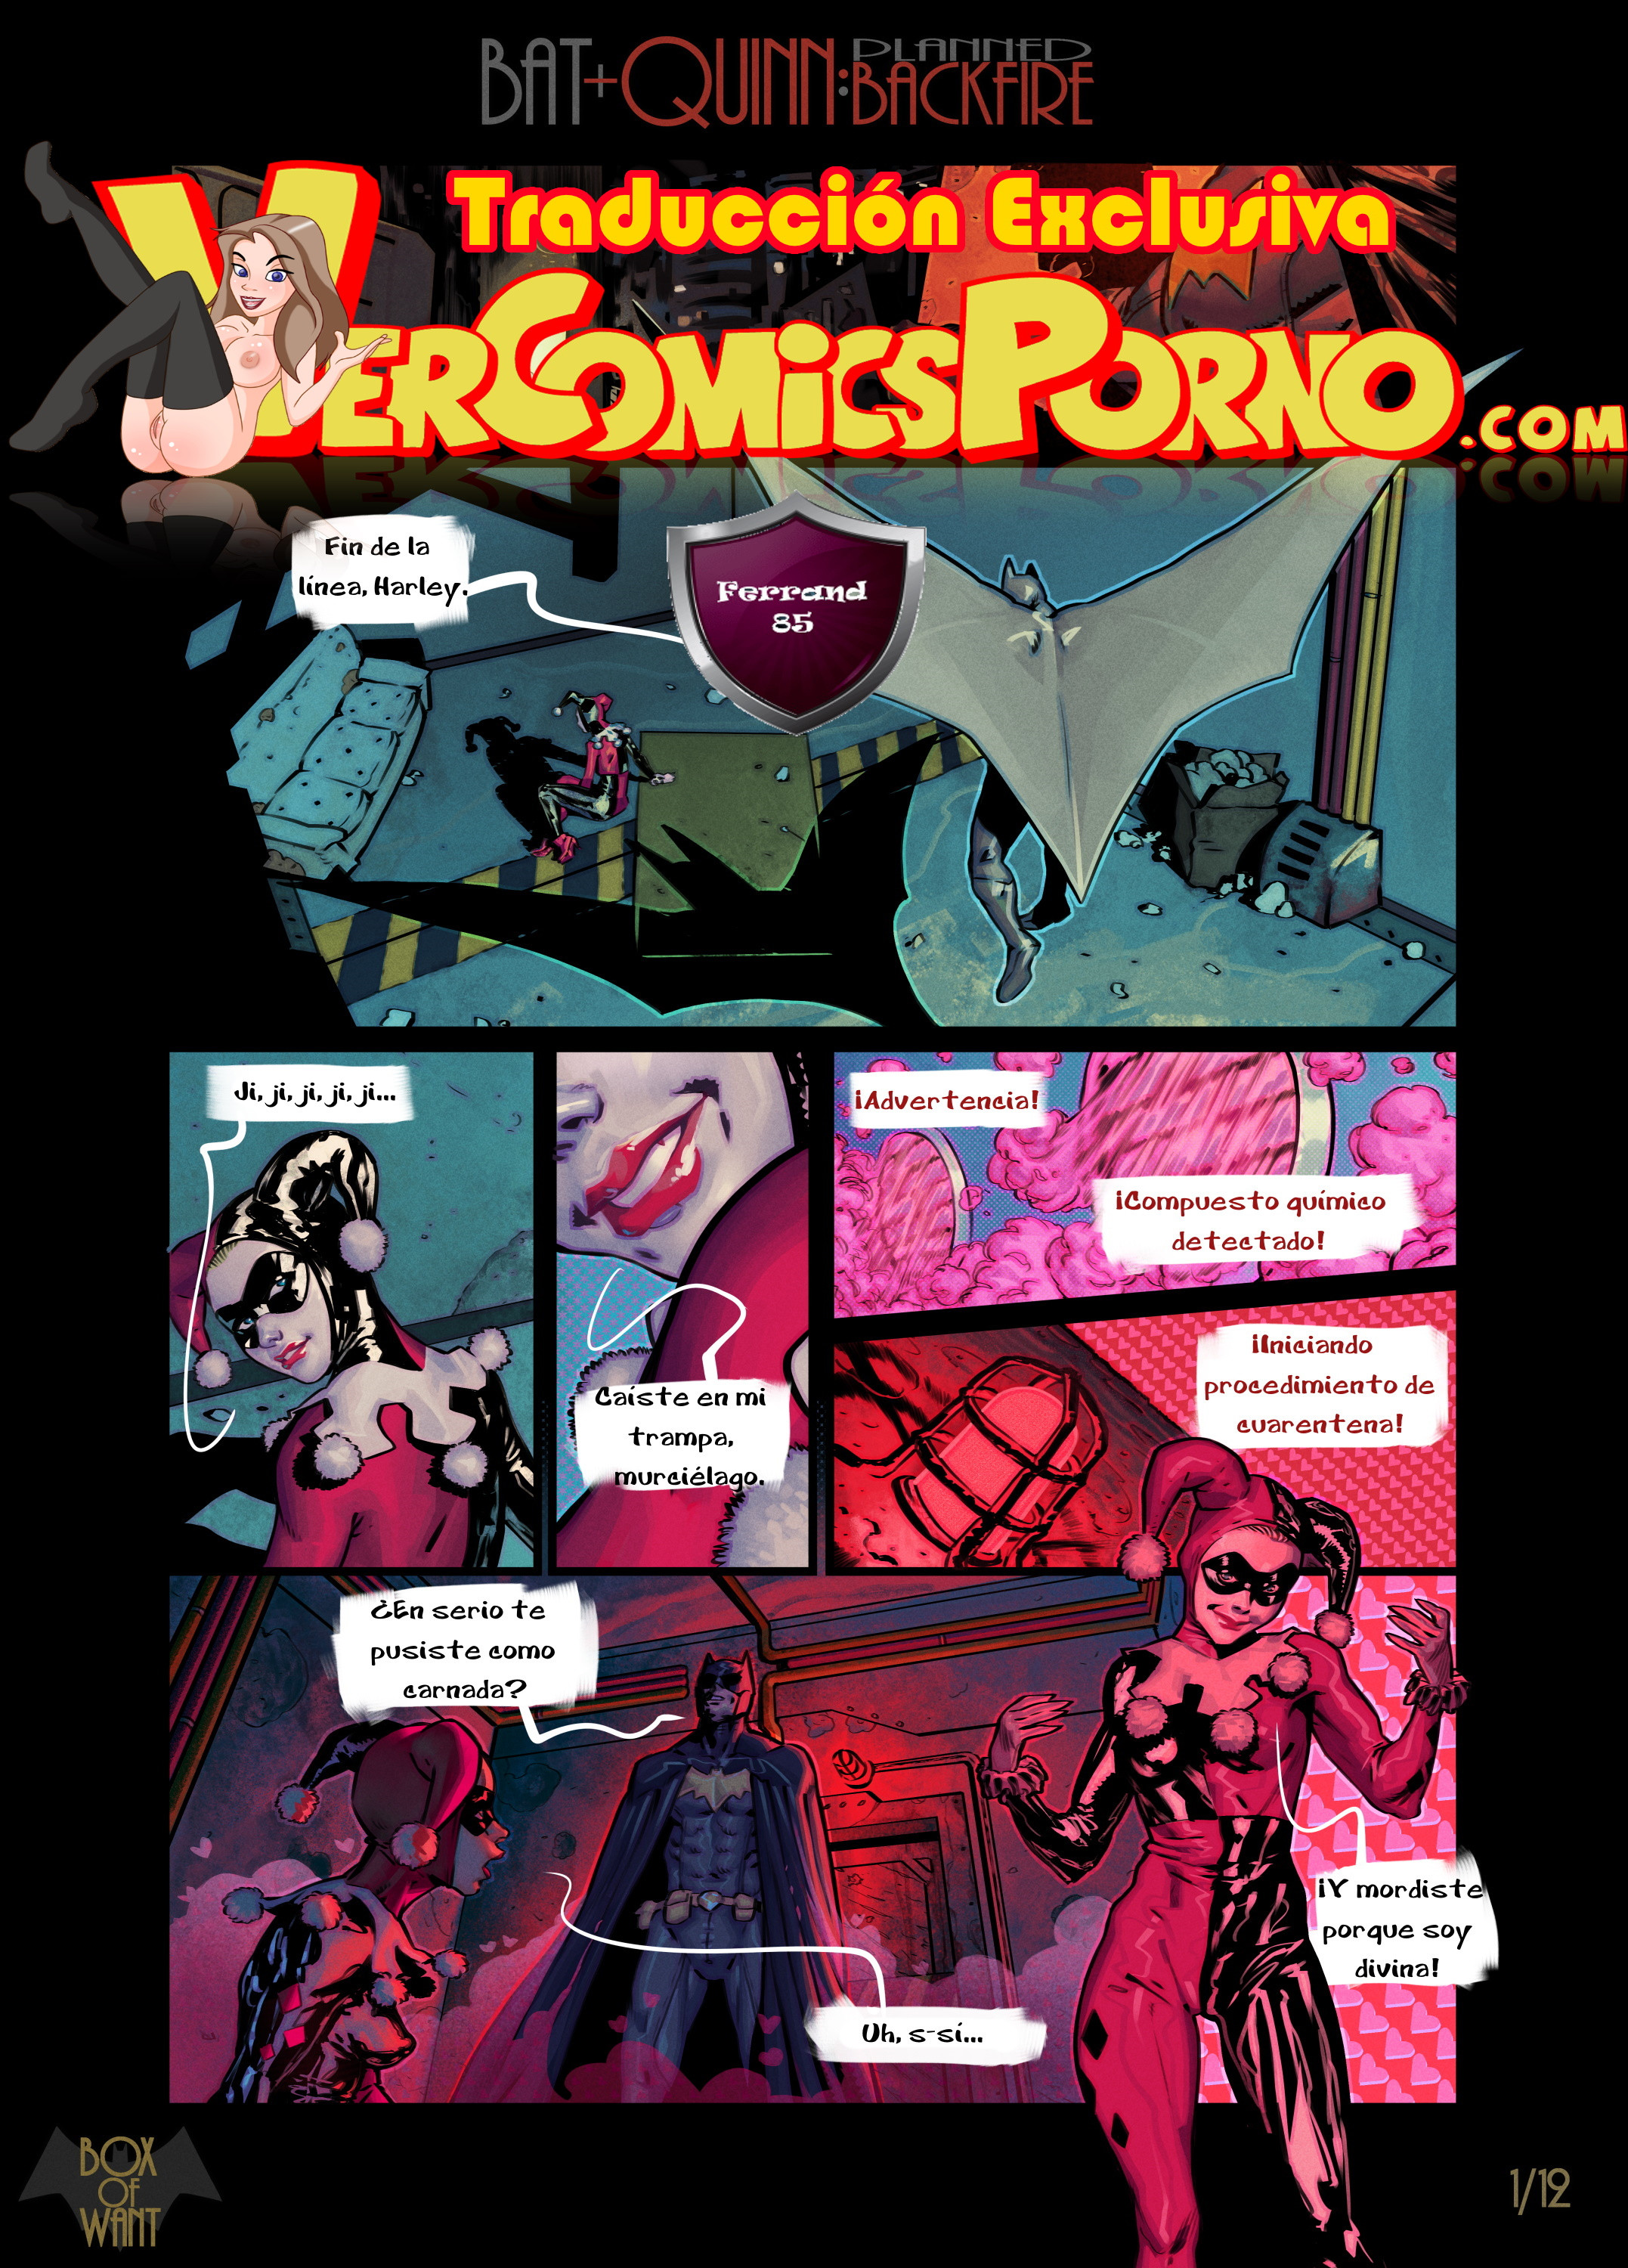 Harley Queen Hentai Cartoon Porn - Batman y Harley Quinn: Fantasias de una noche - Vercomicsporno